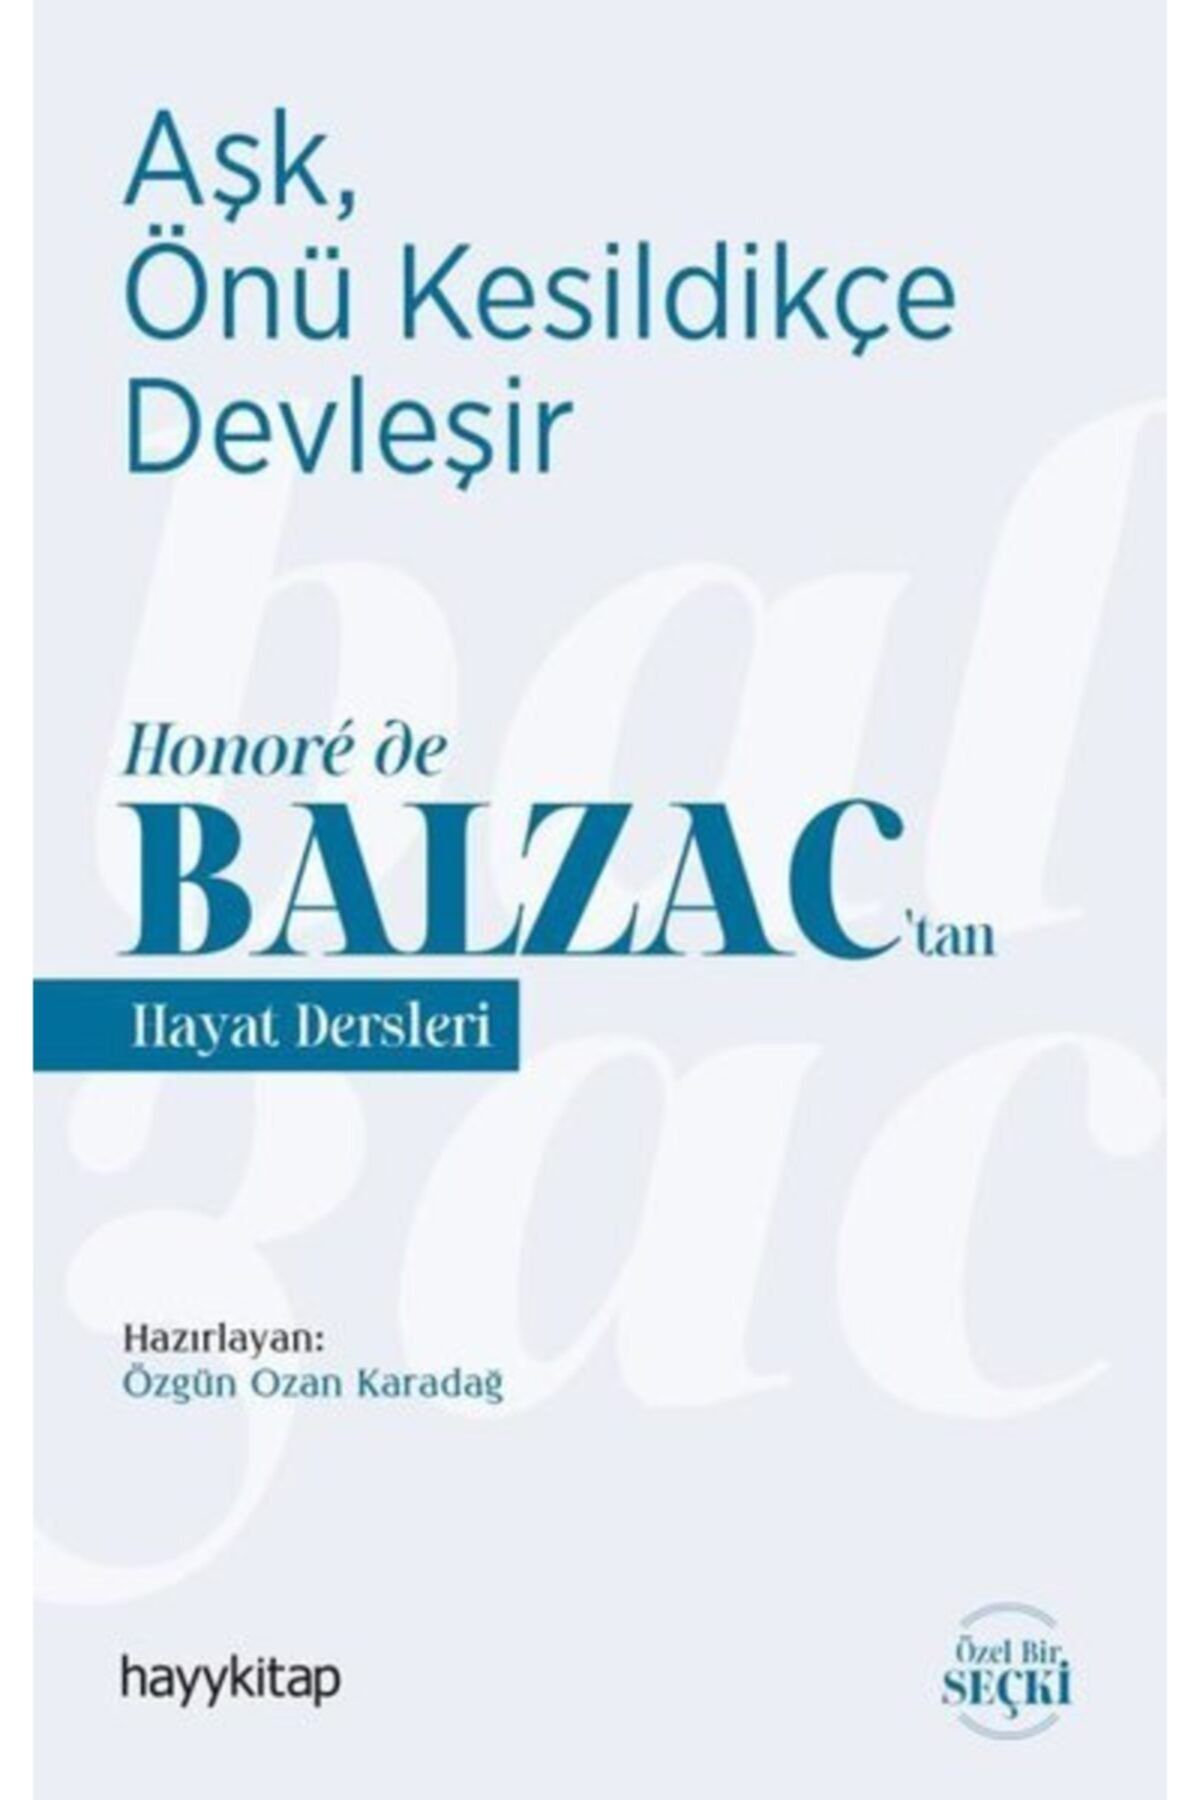 Hayykitap Aşk, Önü Kesildikçe Devleşir - Honoré De Balzac'tan Hayat Dersleri